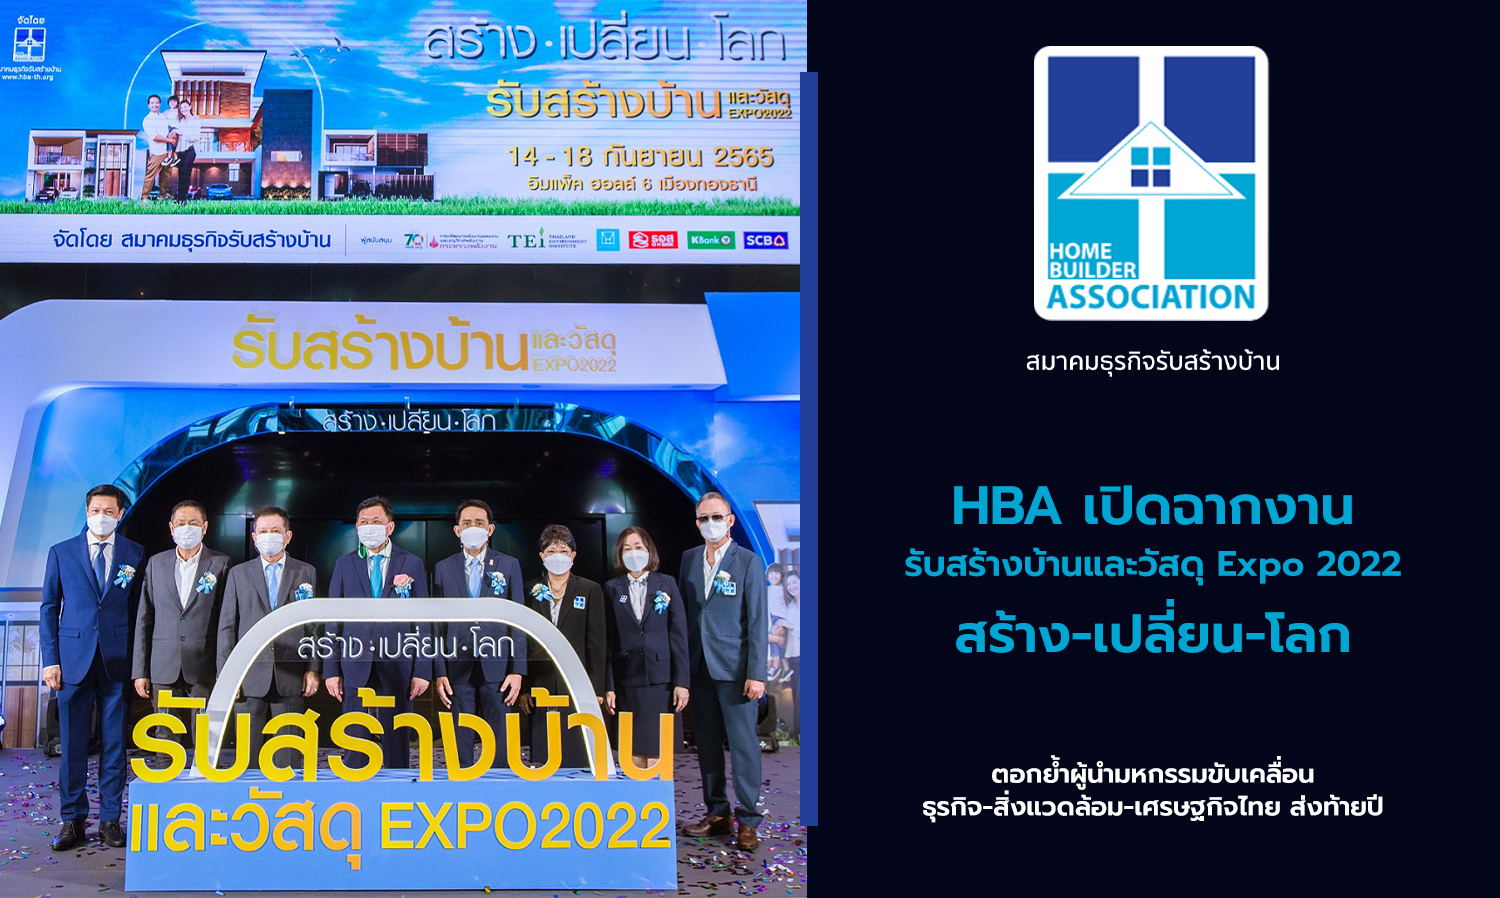 HBA เปิดฉากงานรับสร้างบ้านและวัสดุ Expo 2022 สร้าง-เปลี่ยน-โลก ตอกย้ำผู้นำมหกรรมขับเคลื่อน ธุรกิจ-สิ่งแวดล้อม-เศรษฐกิจไทย ส่งท้ายปี